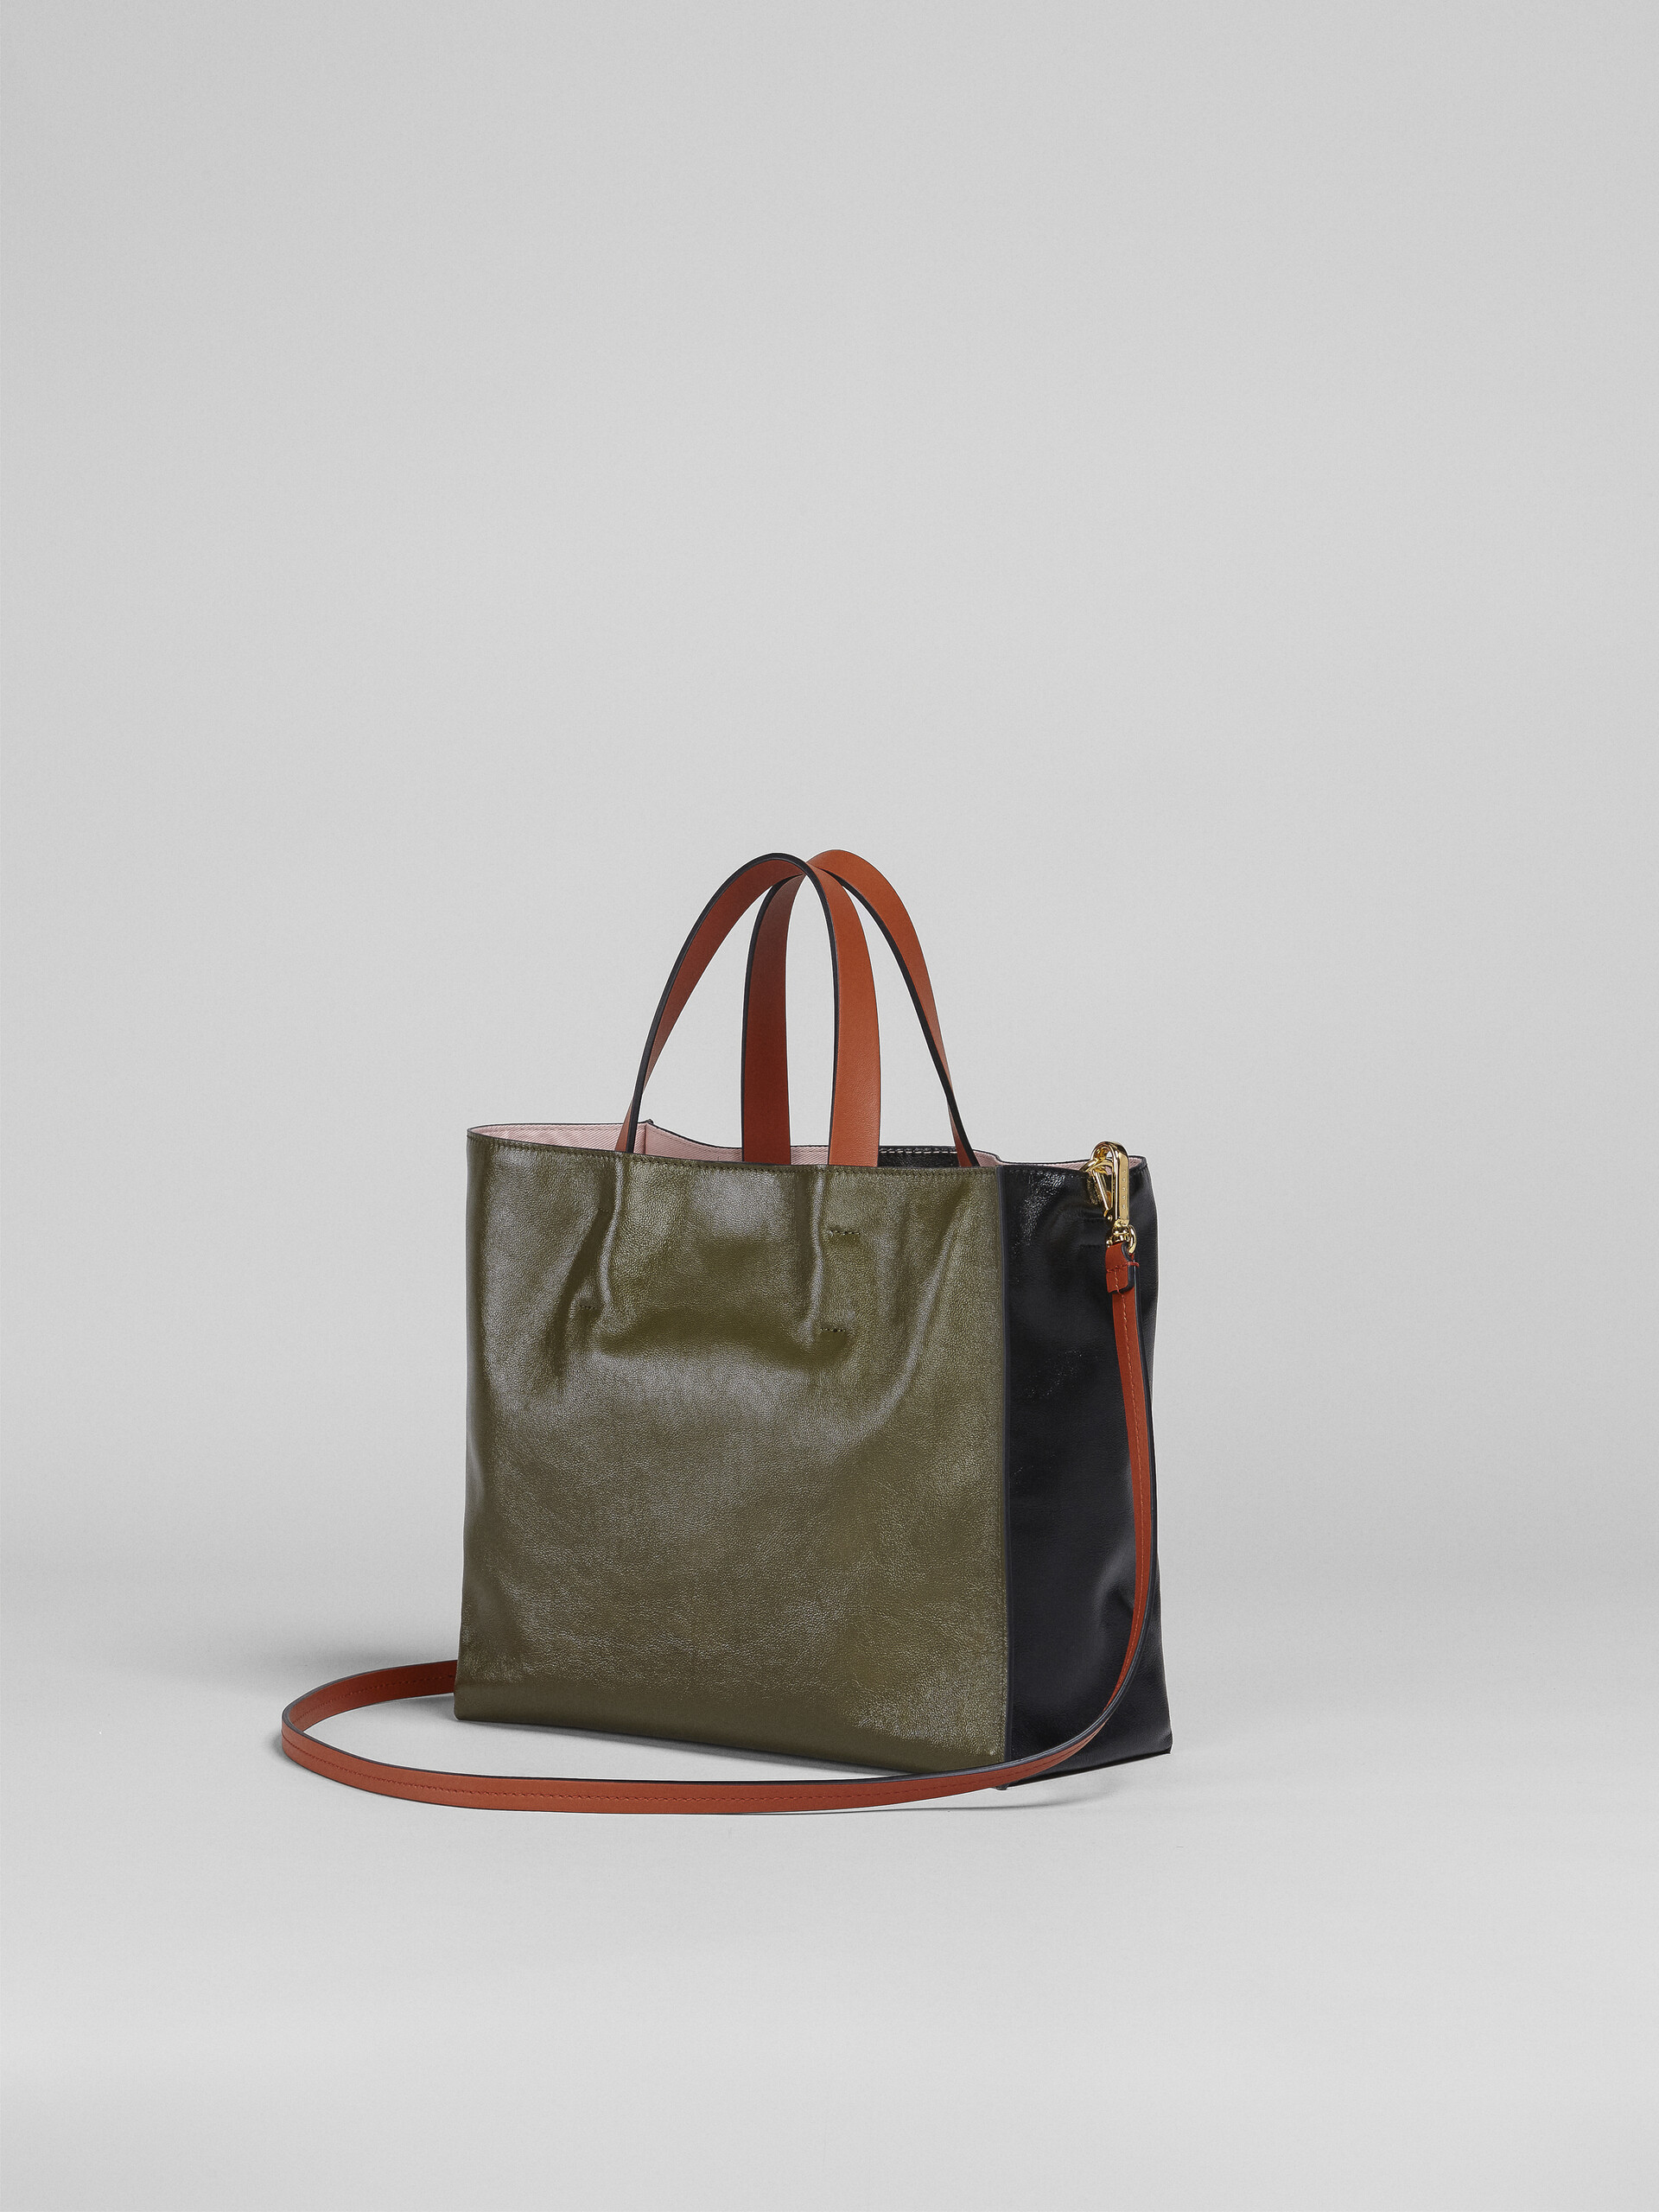 Petit sac MUSEO SOFT en cuir noir, vert et orange - Sacs cabas - Image 3